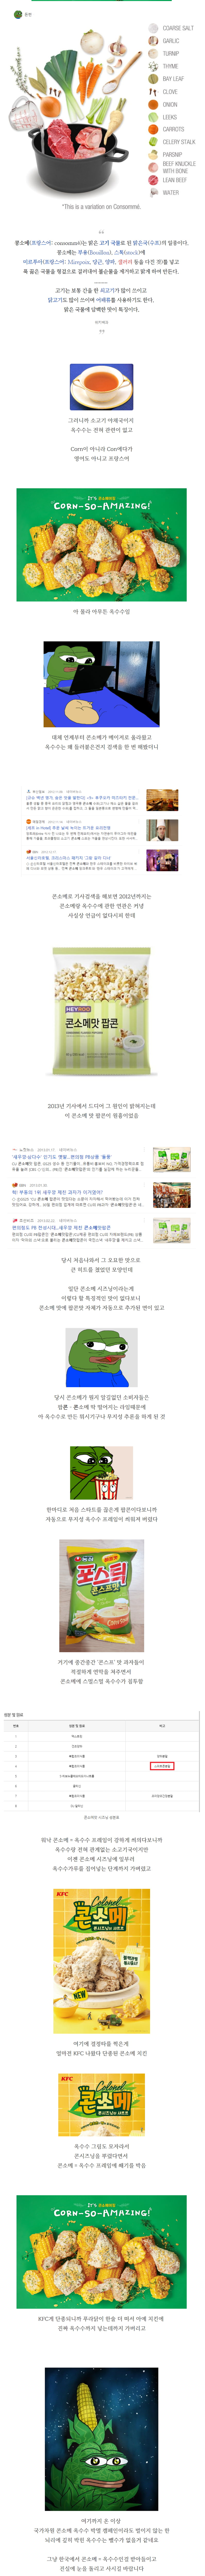 ●韓国で歪曲されたコンソメ味の真実